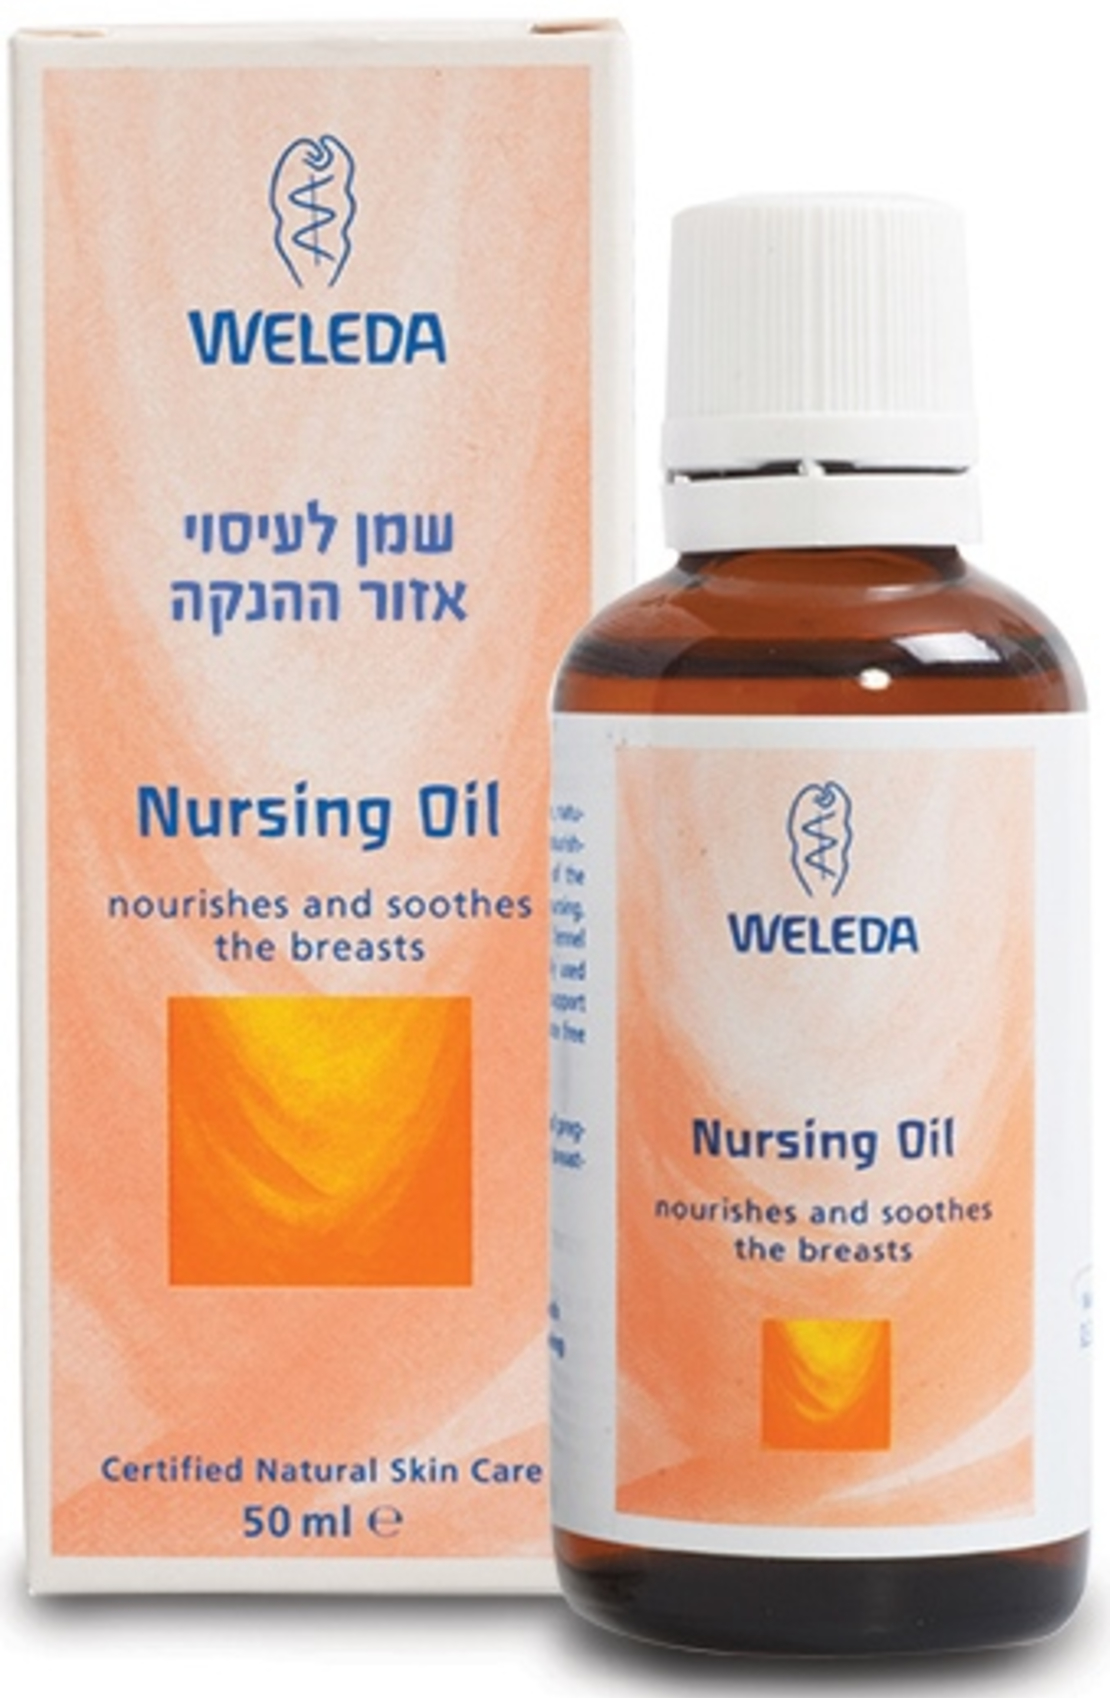 וולדה - שמן לעיסוי אזור ההנקה Weleda Nursing Oil